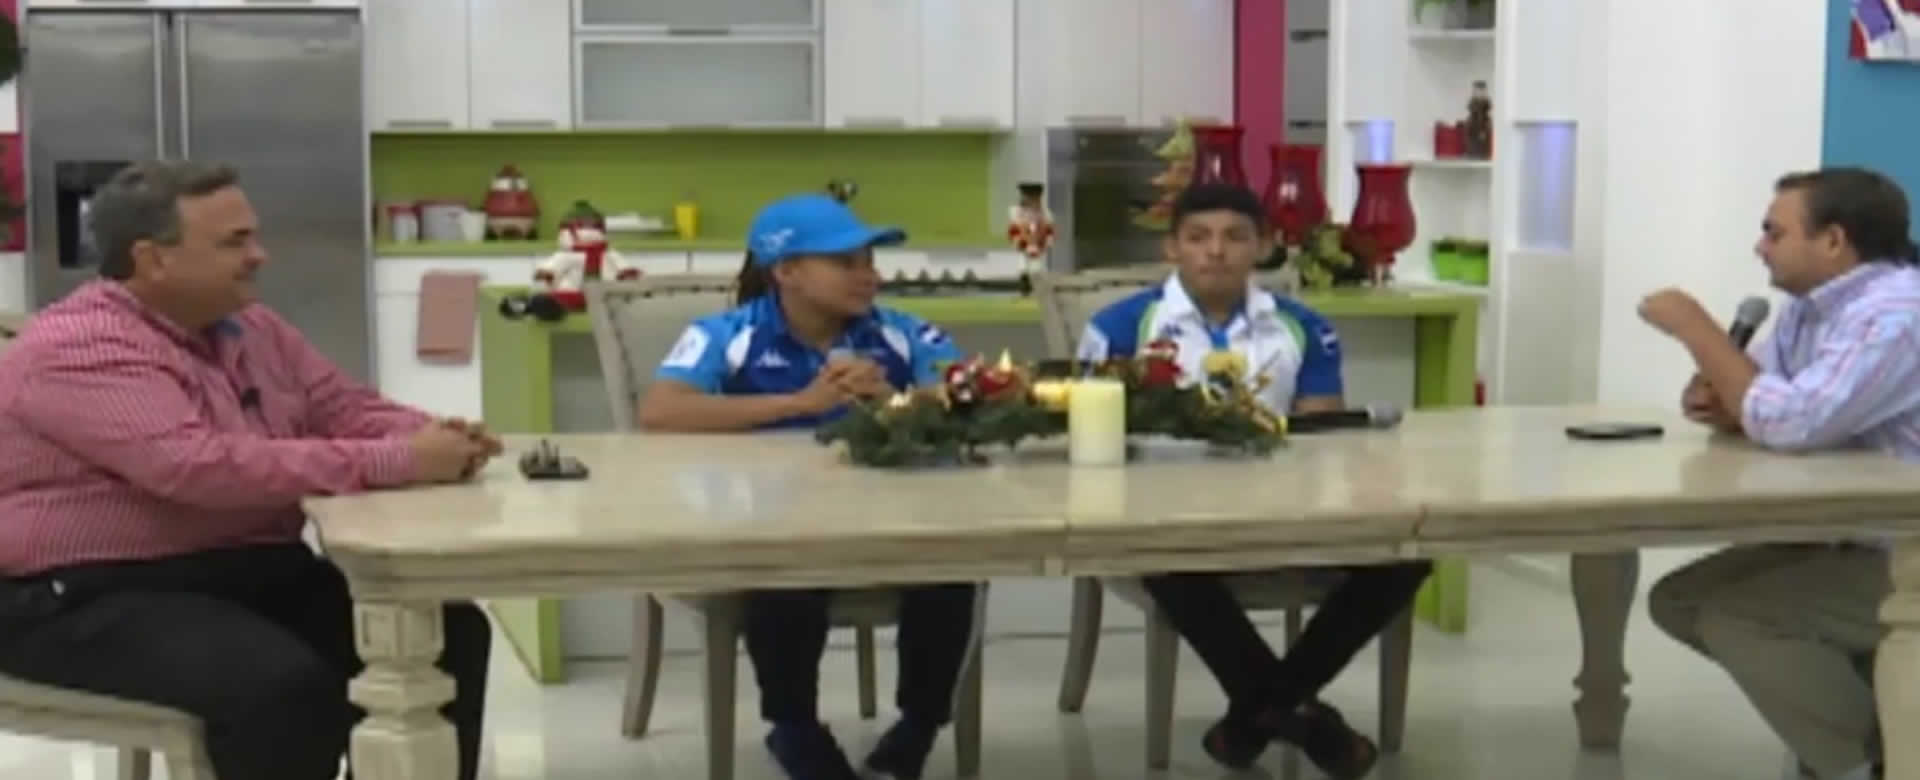 Orlando Vásquez y Sema Ludrick el matrimonio de atletas que consiguió medallas para Nicaragua